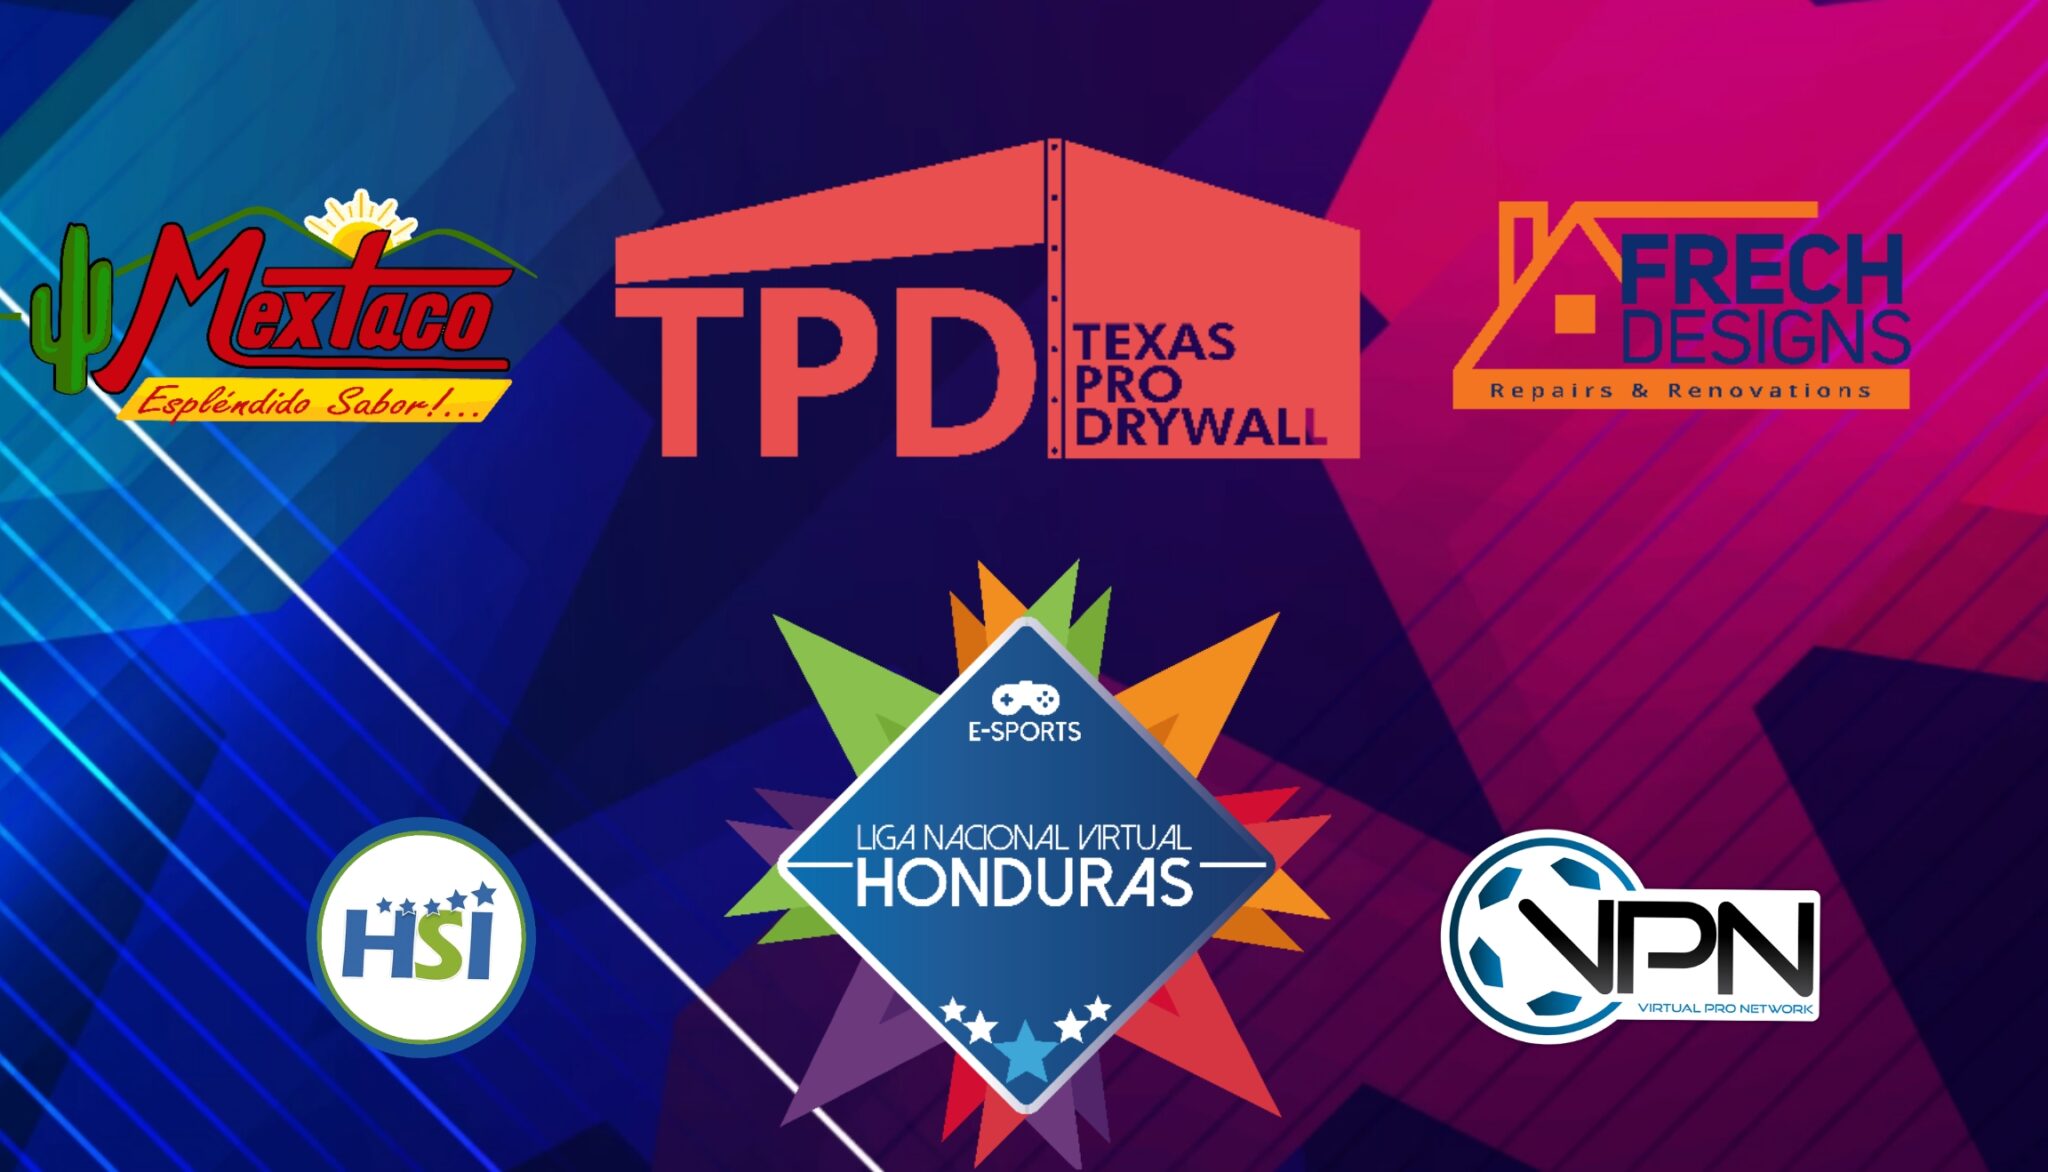 VPN Honduras potenciada con Texas Pro Drywall, Frech Design y Mextaco